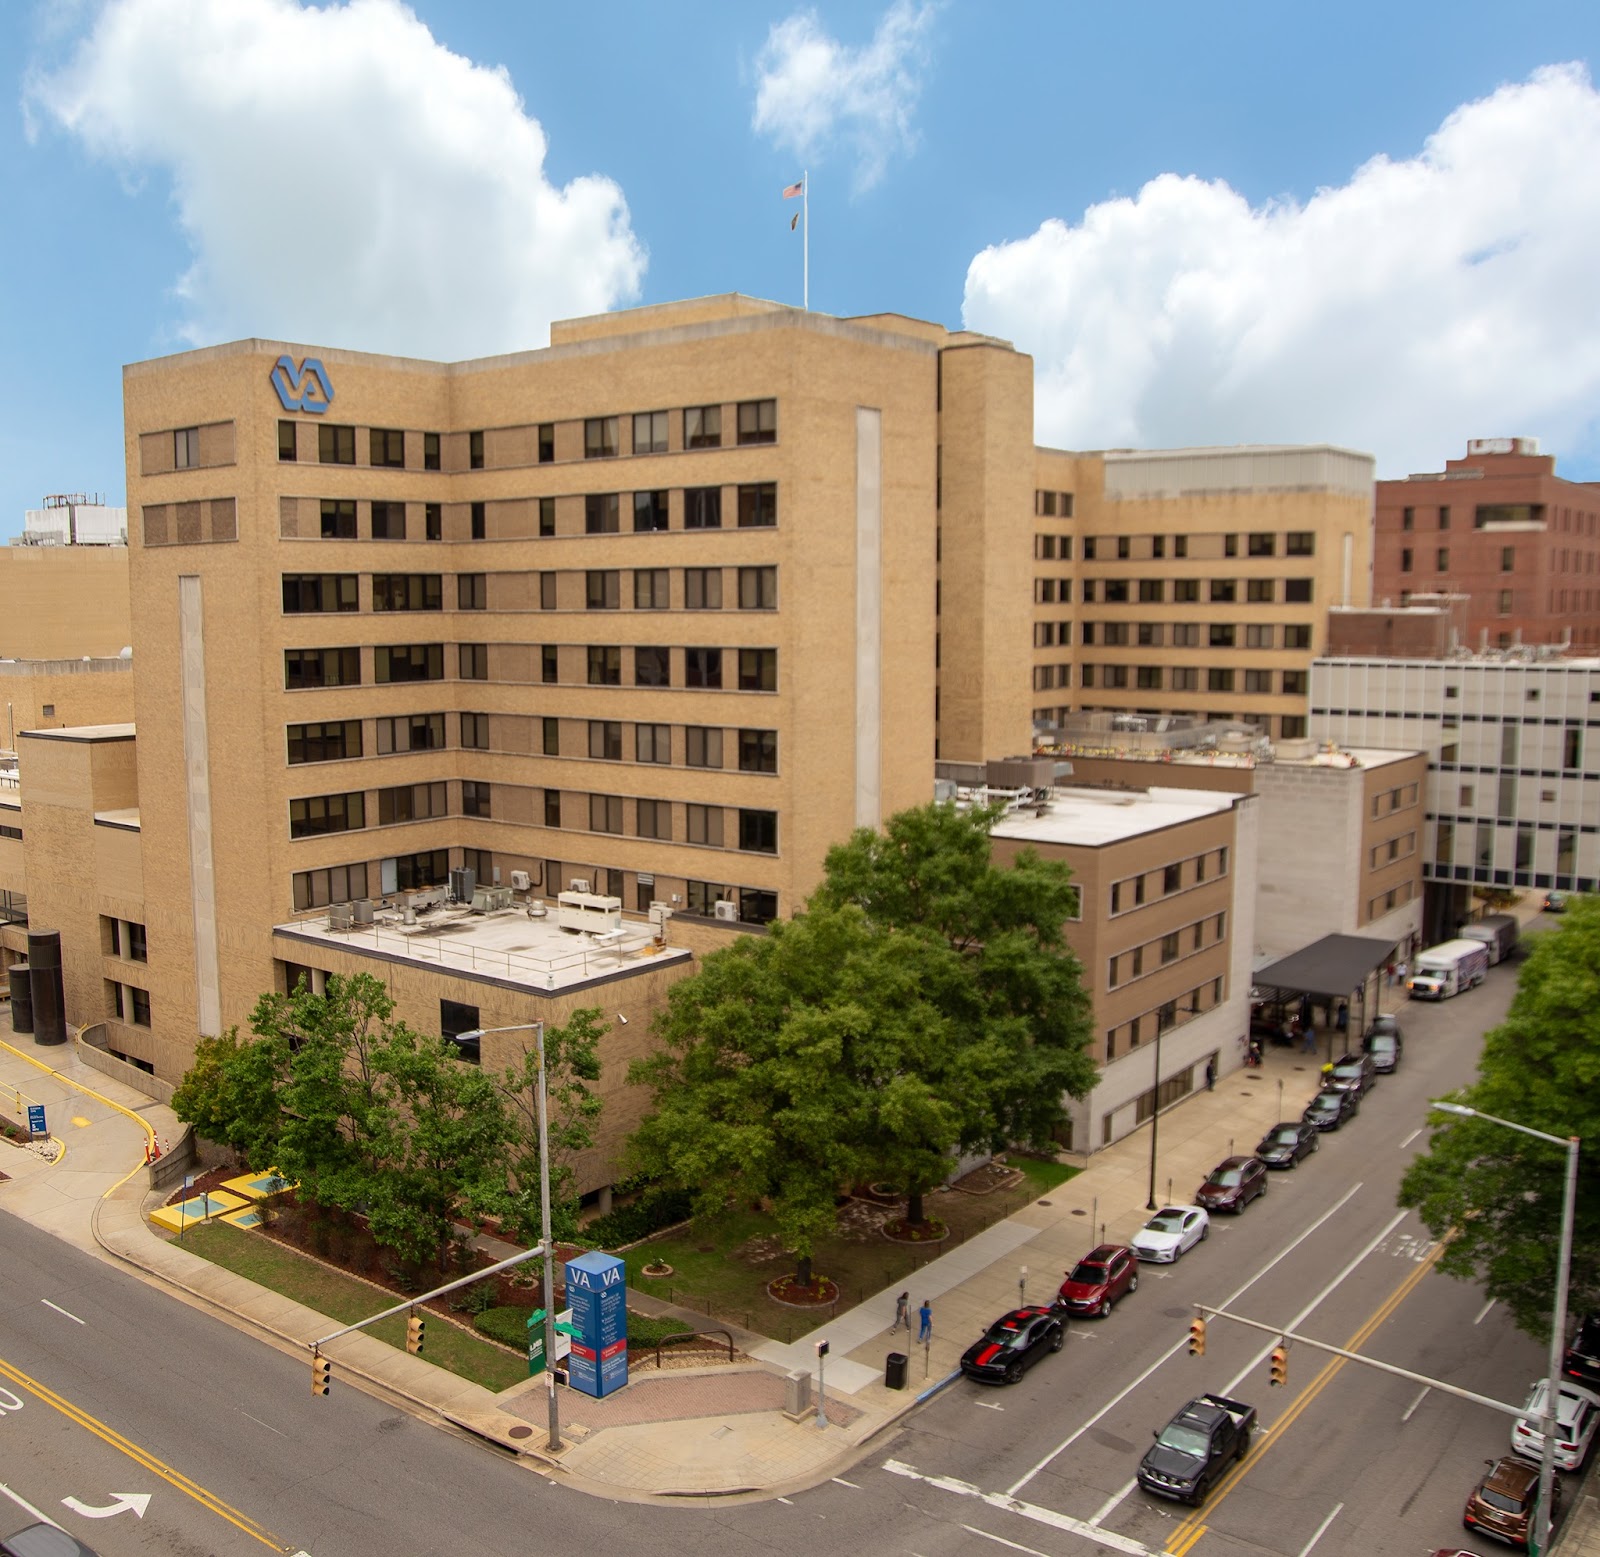 Birmingham VA Health Care System - Birmingham VA East Clinic